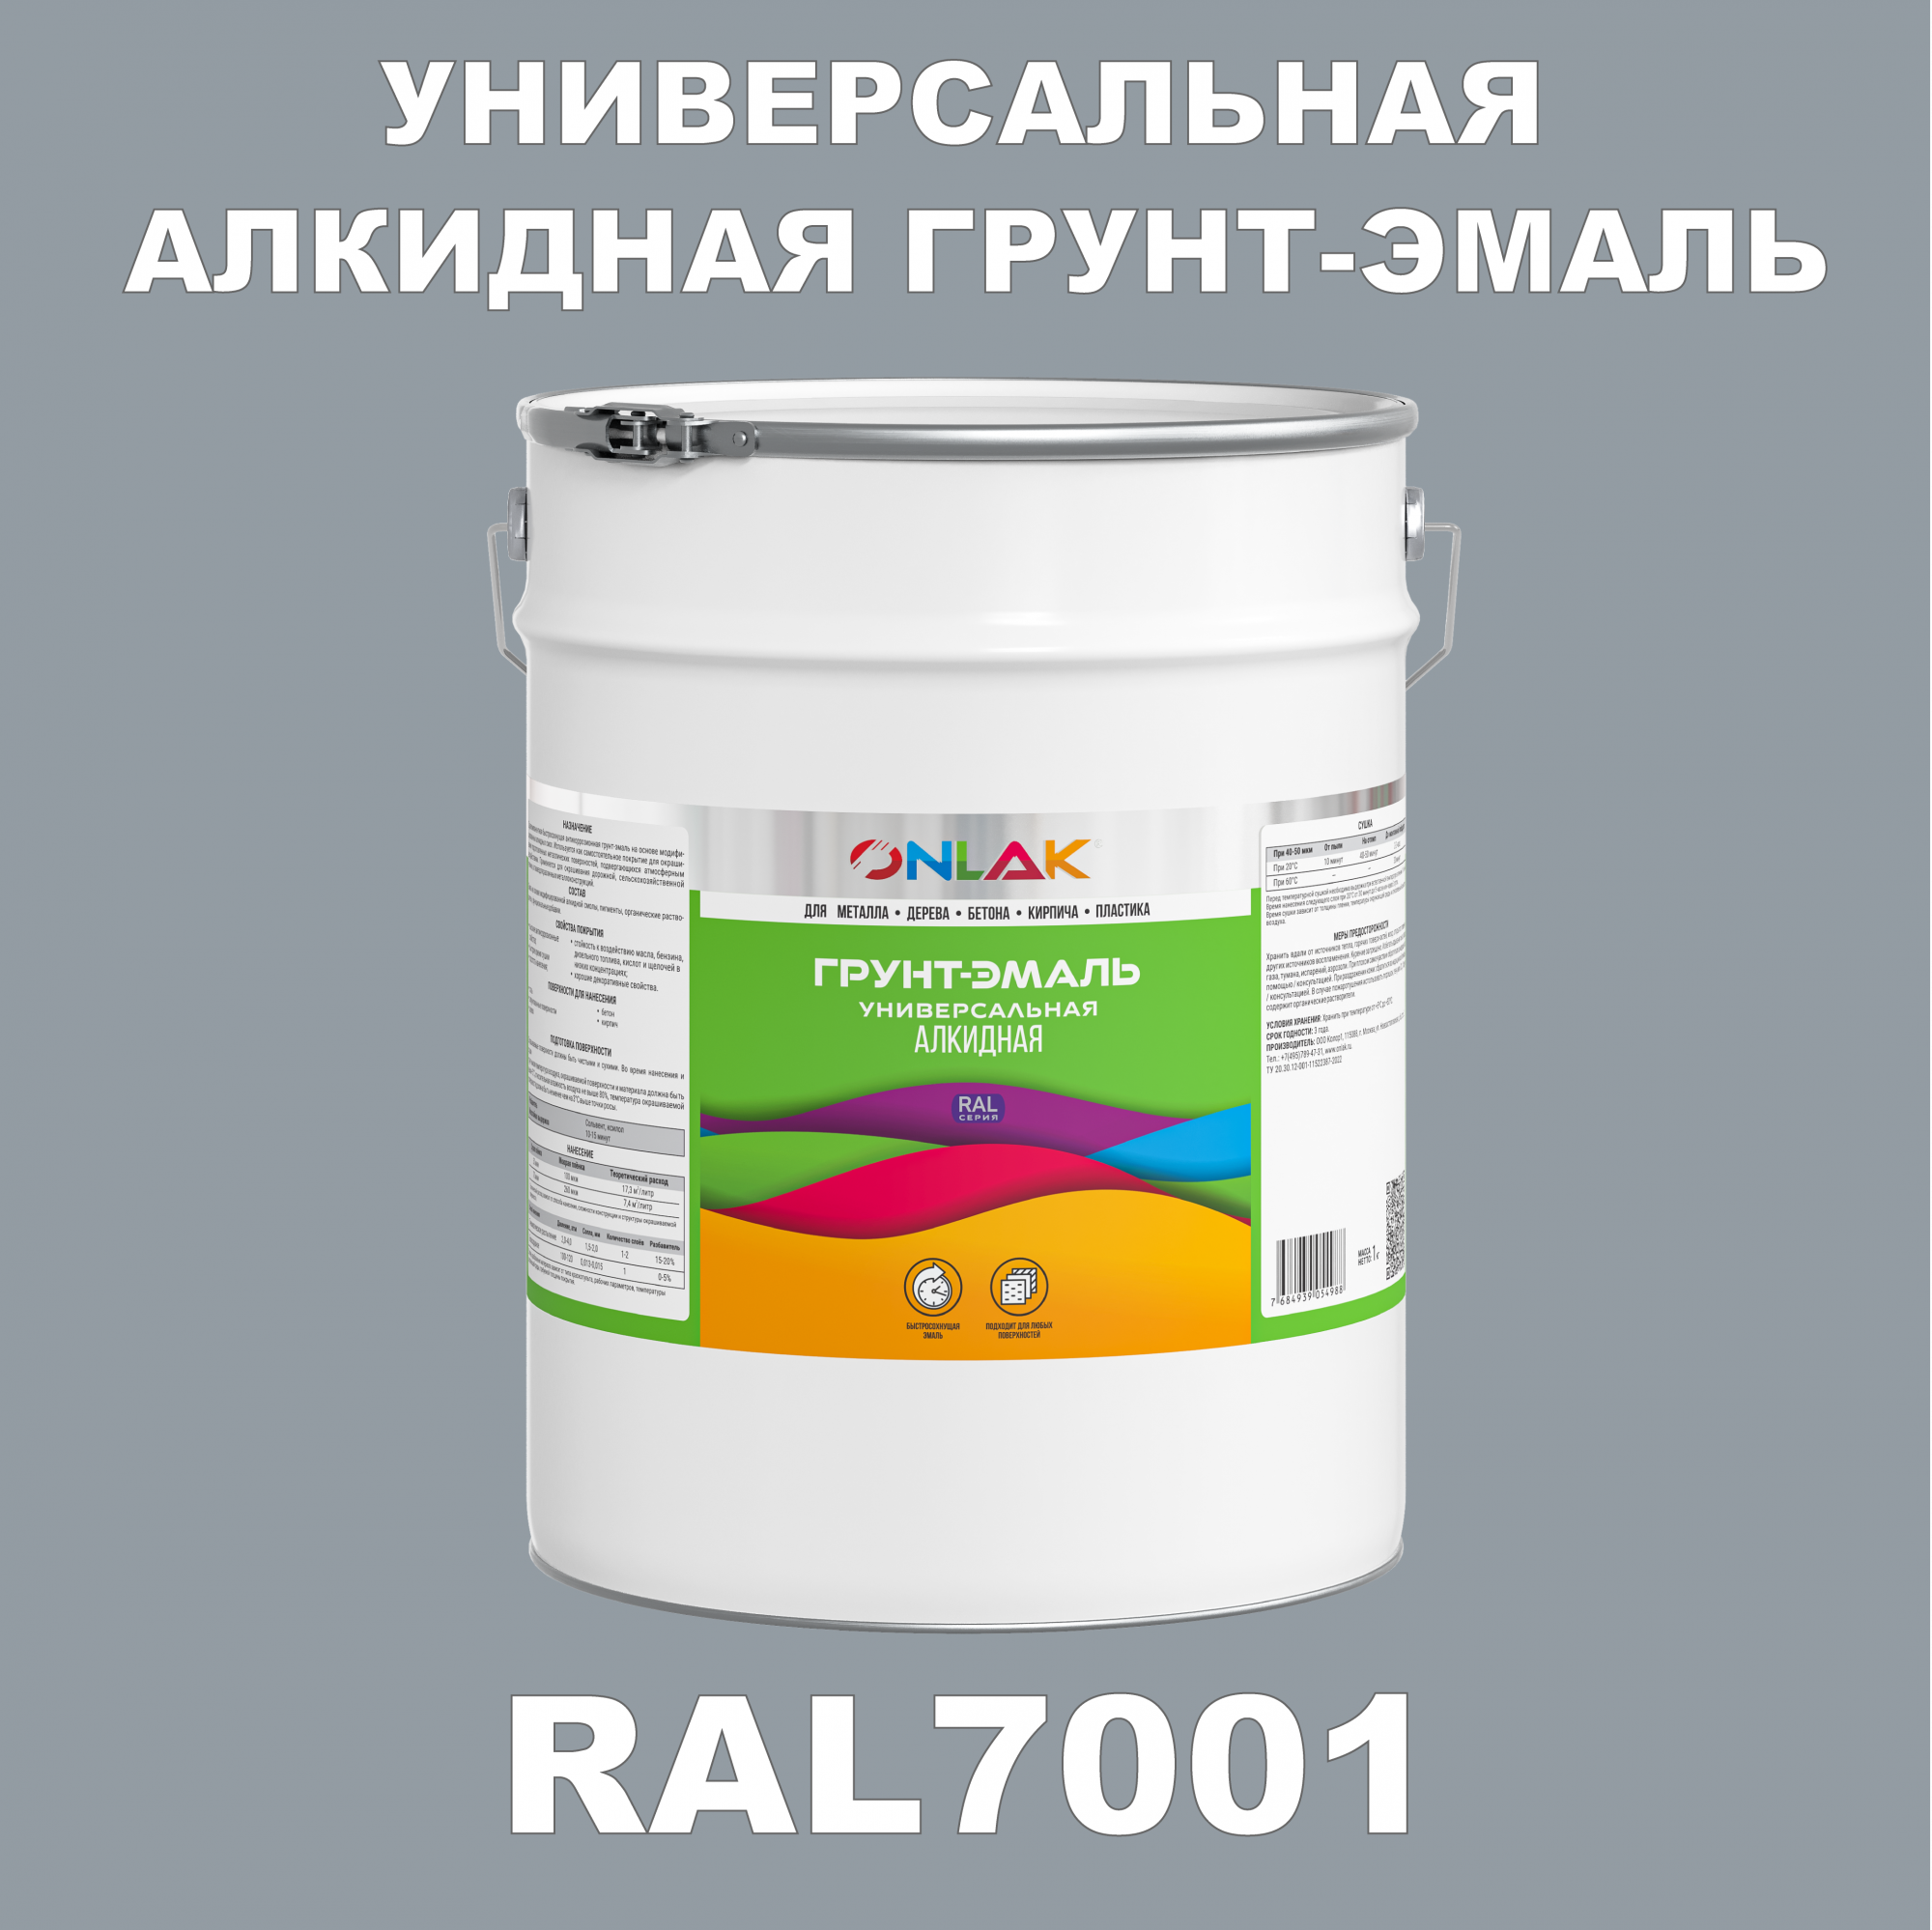 Грунт-эмаль ONLAK 1К RAL7001 антикоррозионная алкидная по металлу по ржавчине 20 кг грунт для масла mighty oak